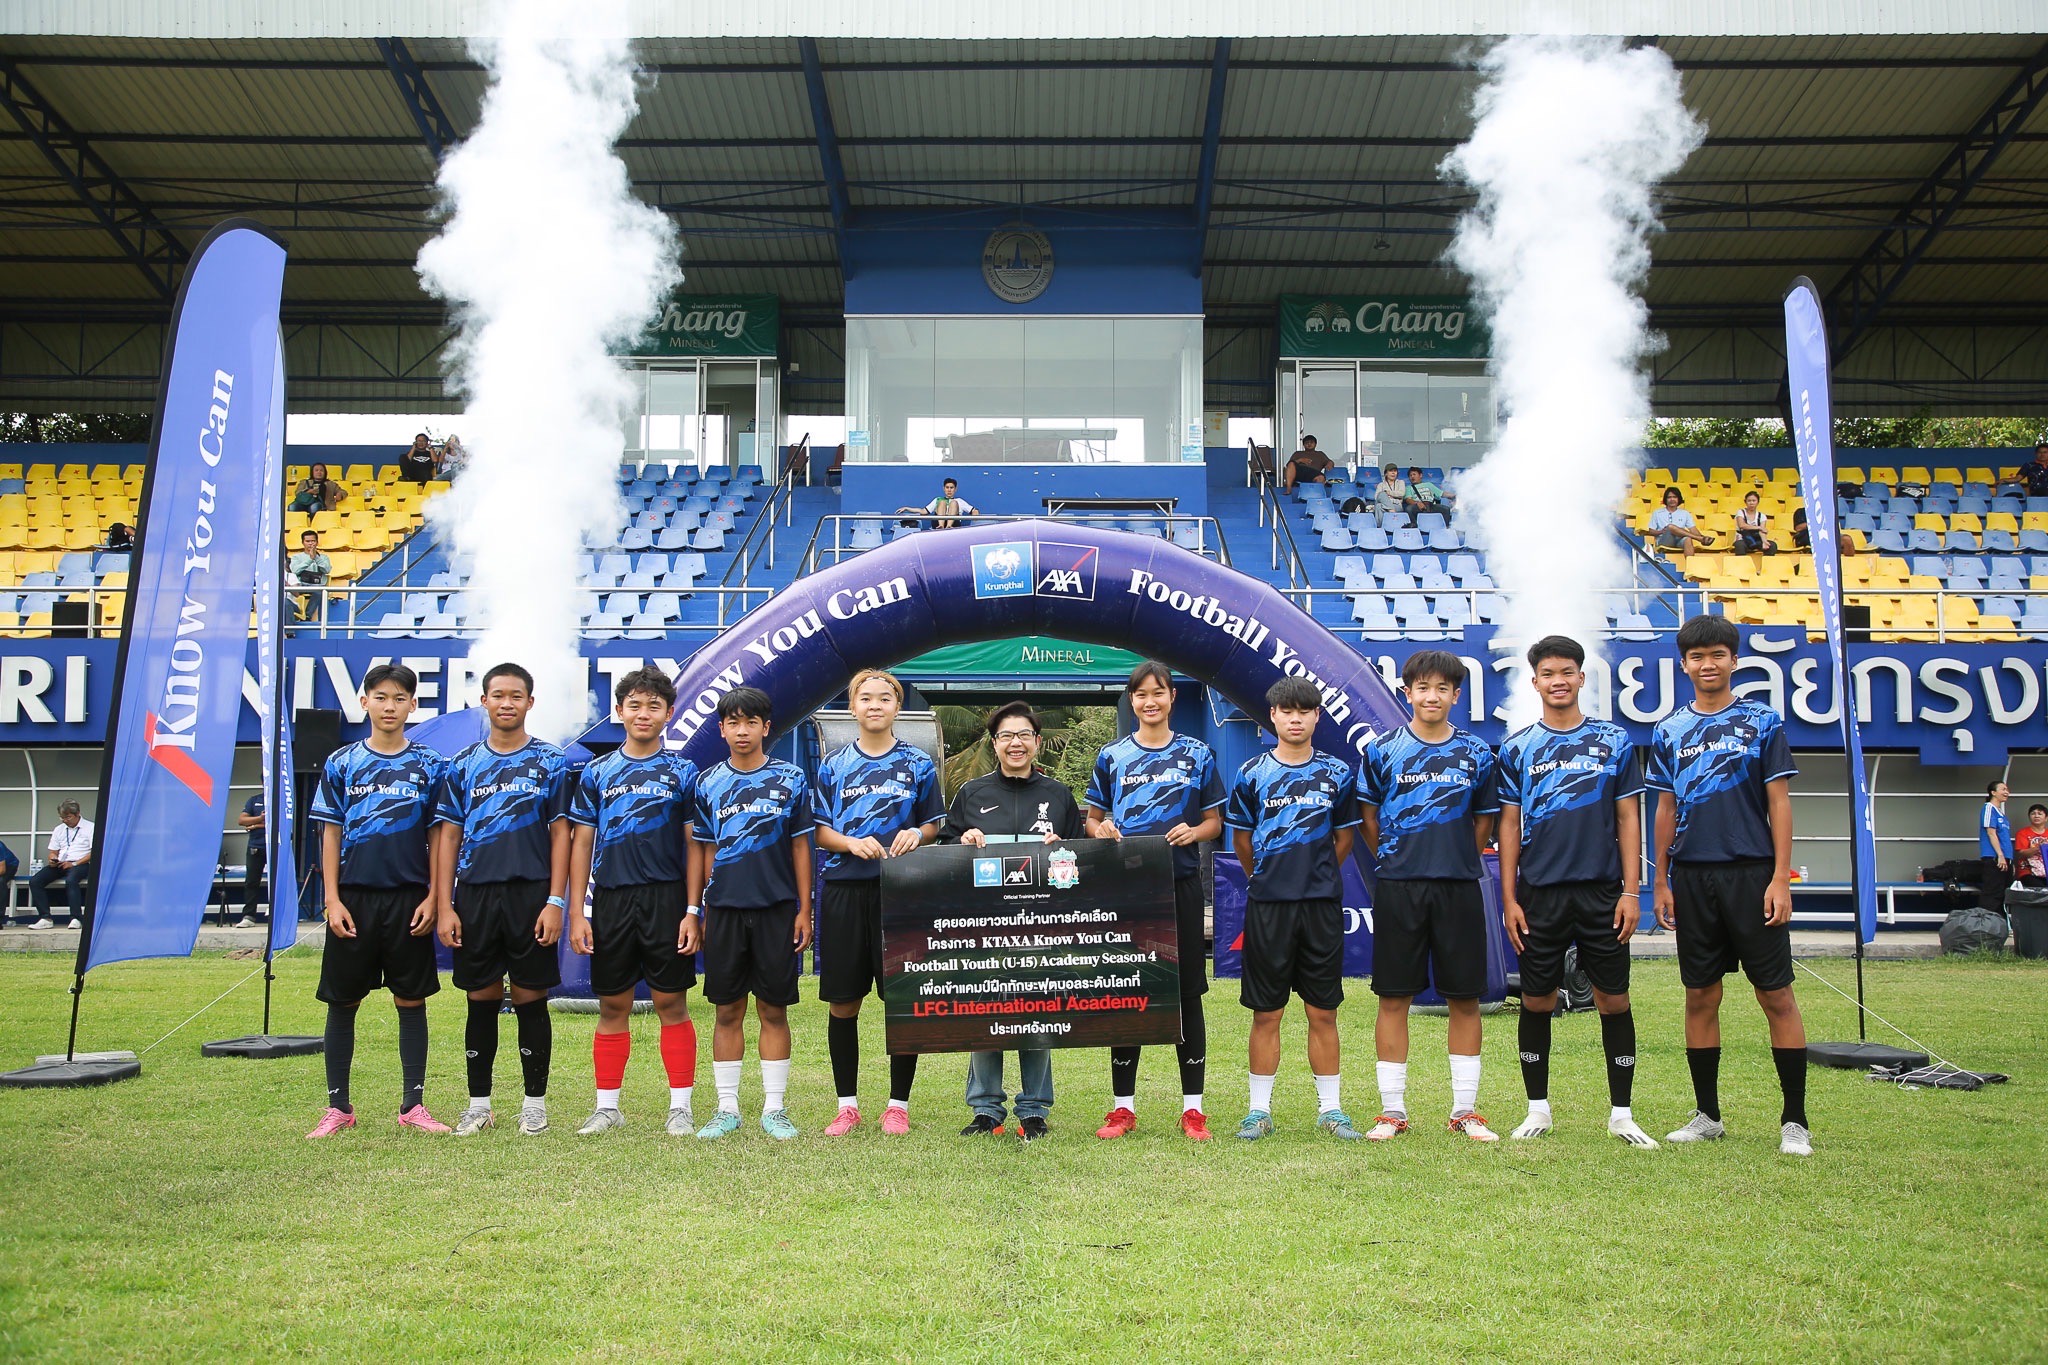 กรุงไทย-แอกซ่า ประกันชีวิต เผยโฉม 10 สุดยอดเยาวชนไทย ที่ได้รับคัดเลือกในโครงการ“KTAXA Know You Can Football Youth (U15)Academy”ร่วมเข้าแคมป์ฝึกทักษะฟุตบอลระดับโลกที่LFC International Academyประเทศอังกฤษ